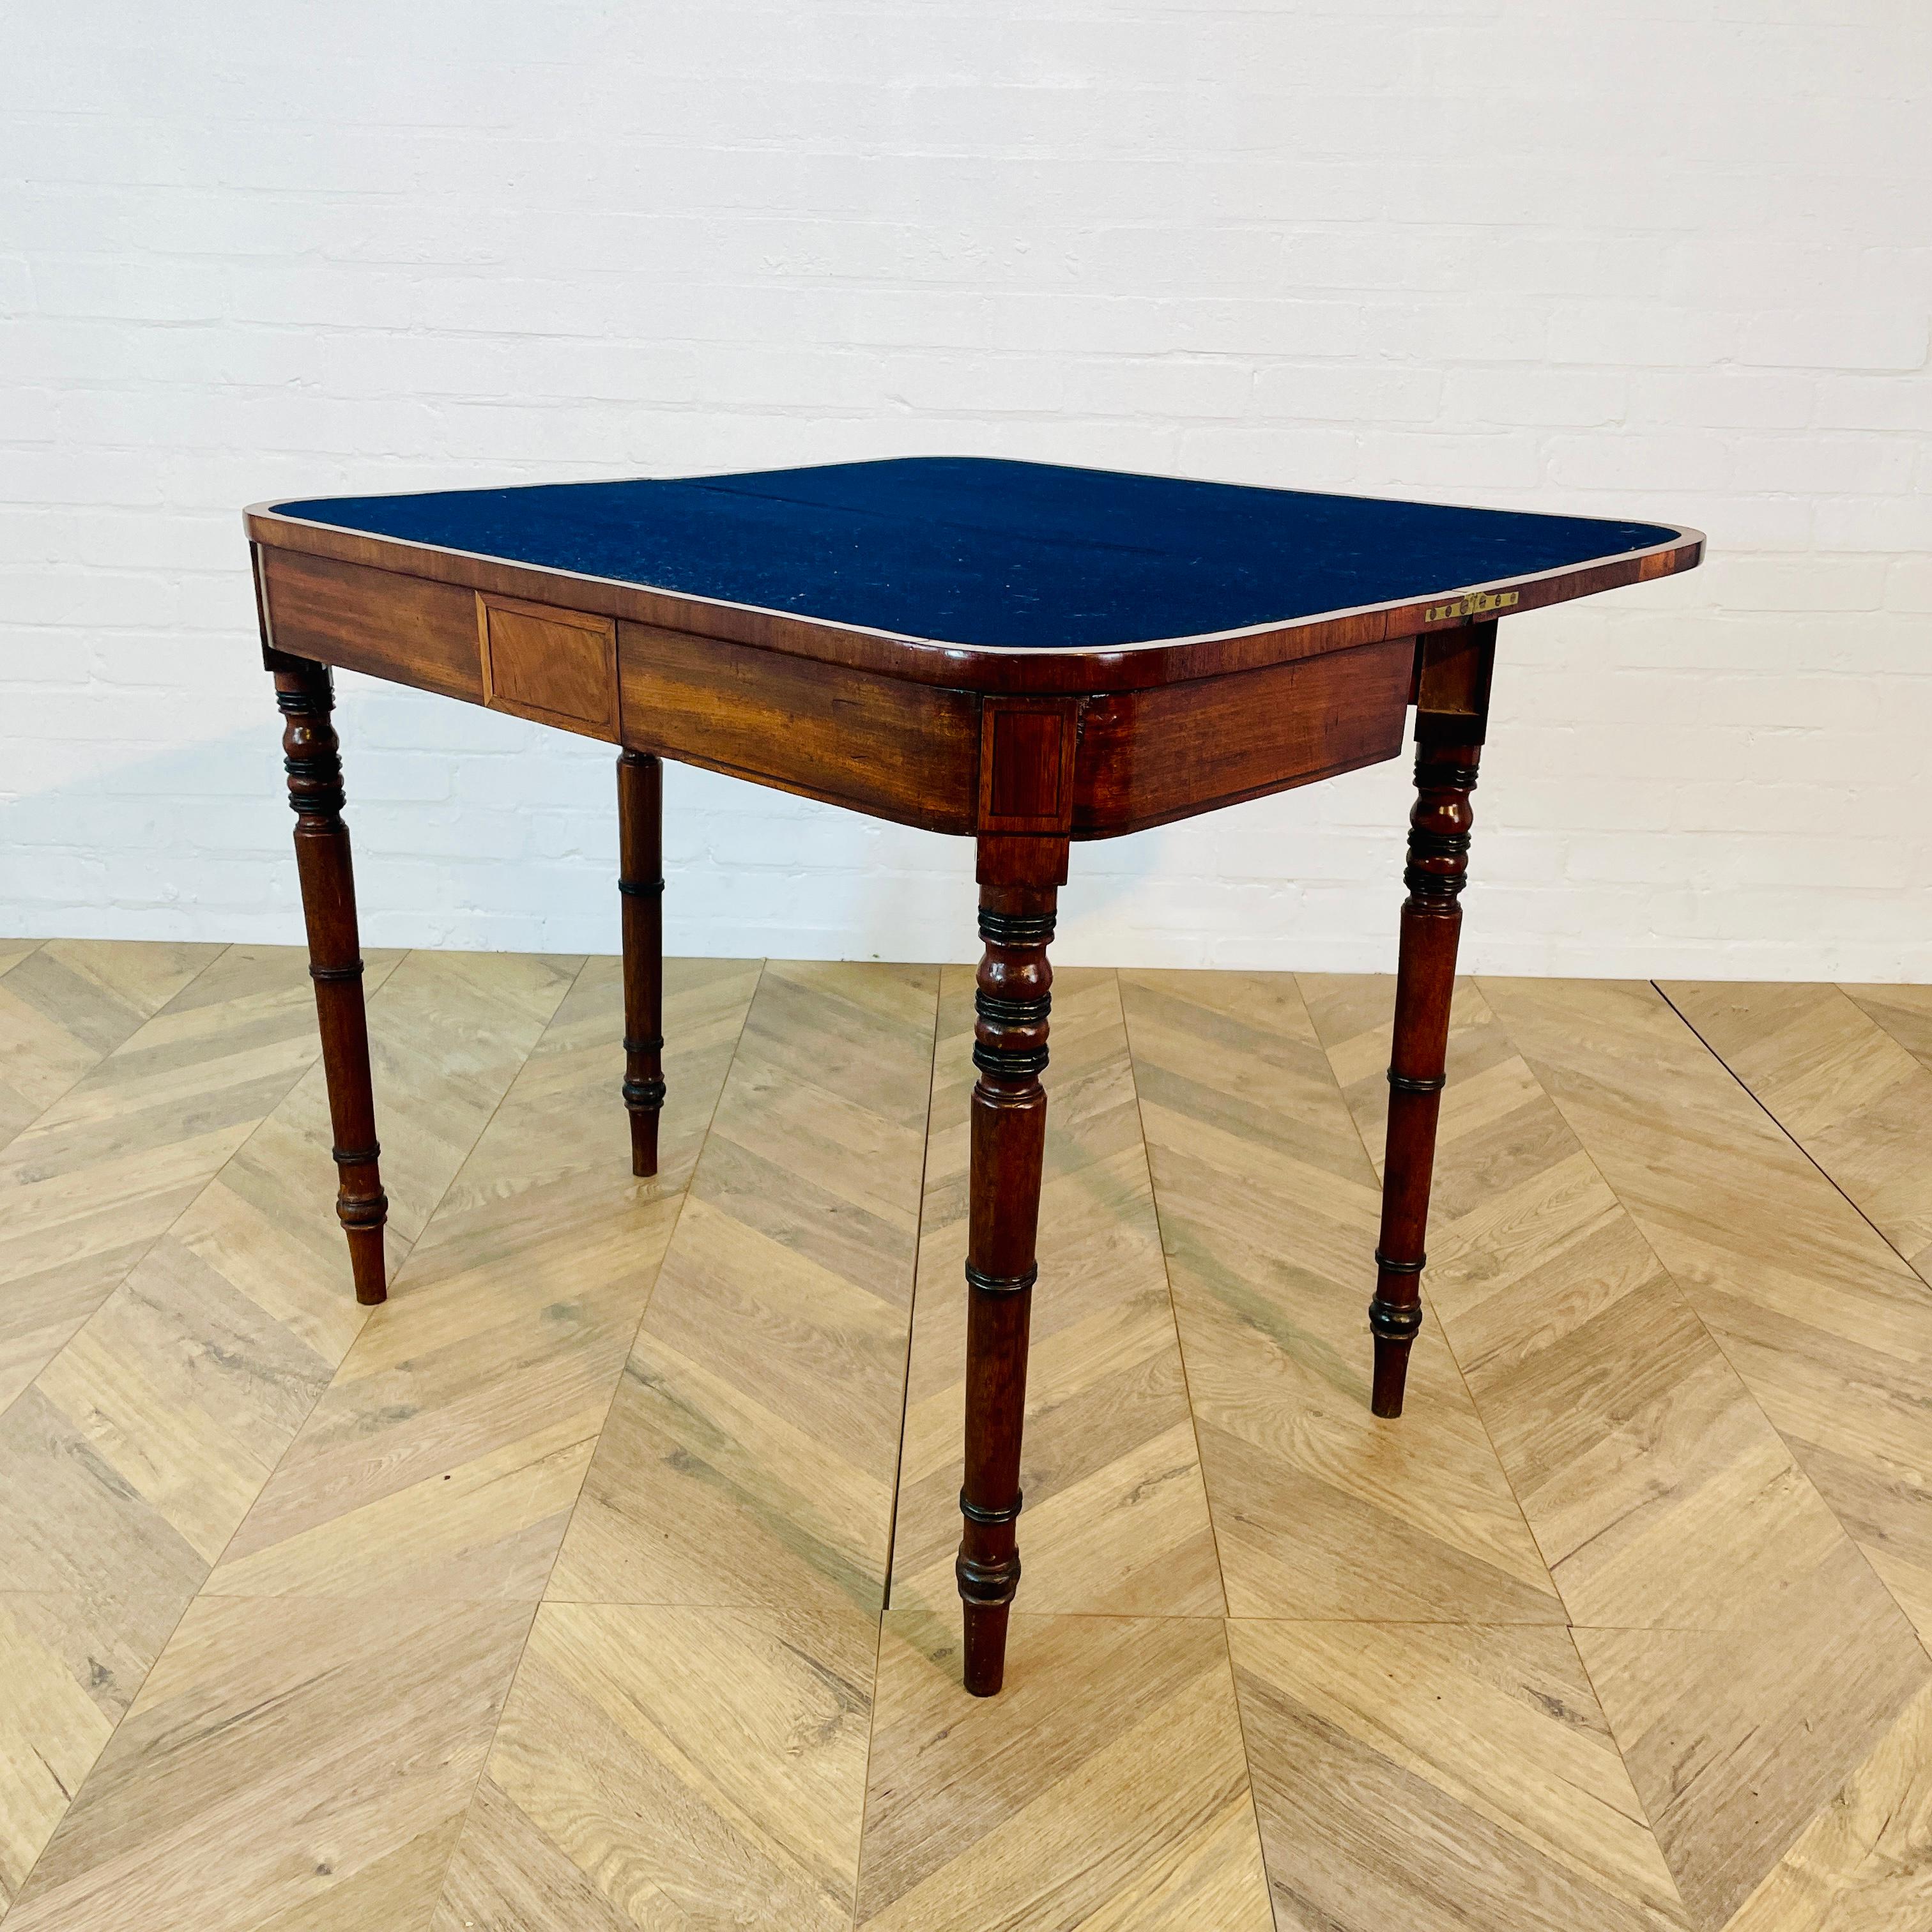 Eine schöne englische antike Foldout Kartentisch, viktorianischen Zeit ca. 1880er Jahren.

Der Tisch, aus Mahagoni und strukturell sehr stark, mit schönen Intarsien Verzögerungen.

Der Tisch hat eine warme Patina, aber es zeigt eine kleine Menge von